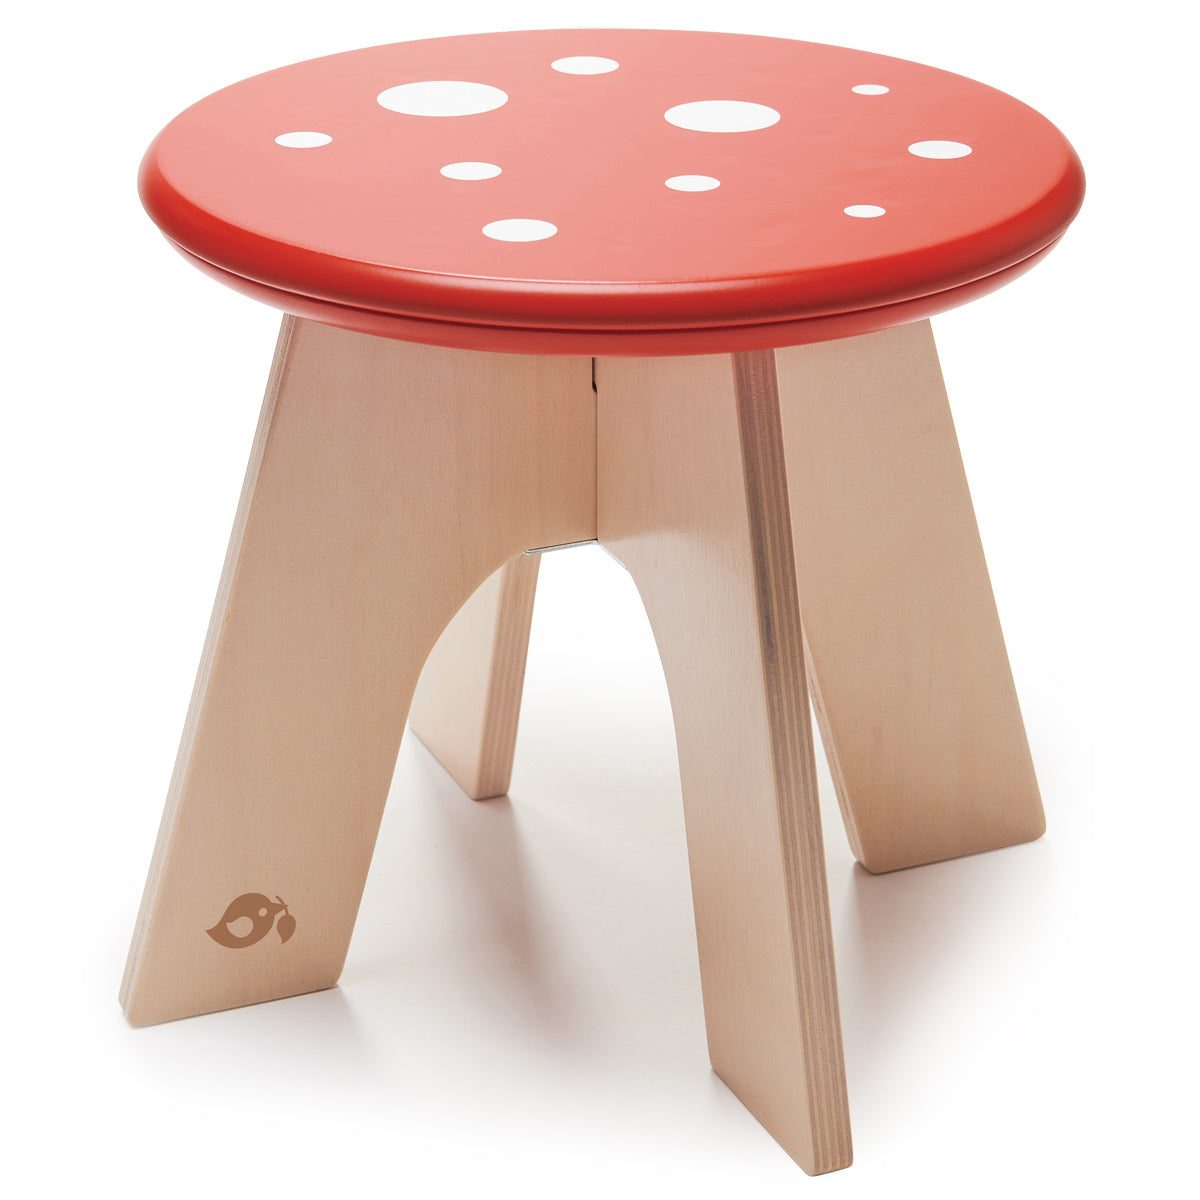 Mushroom Chair